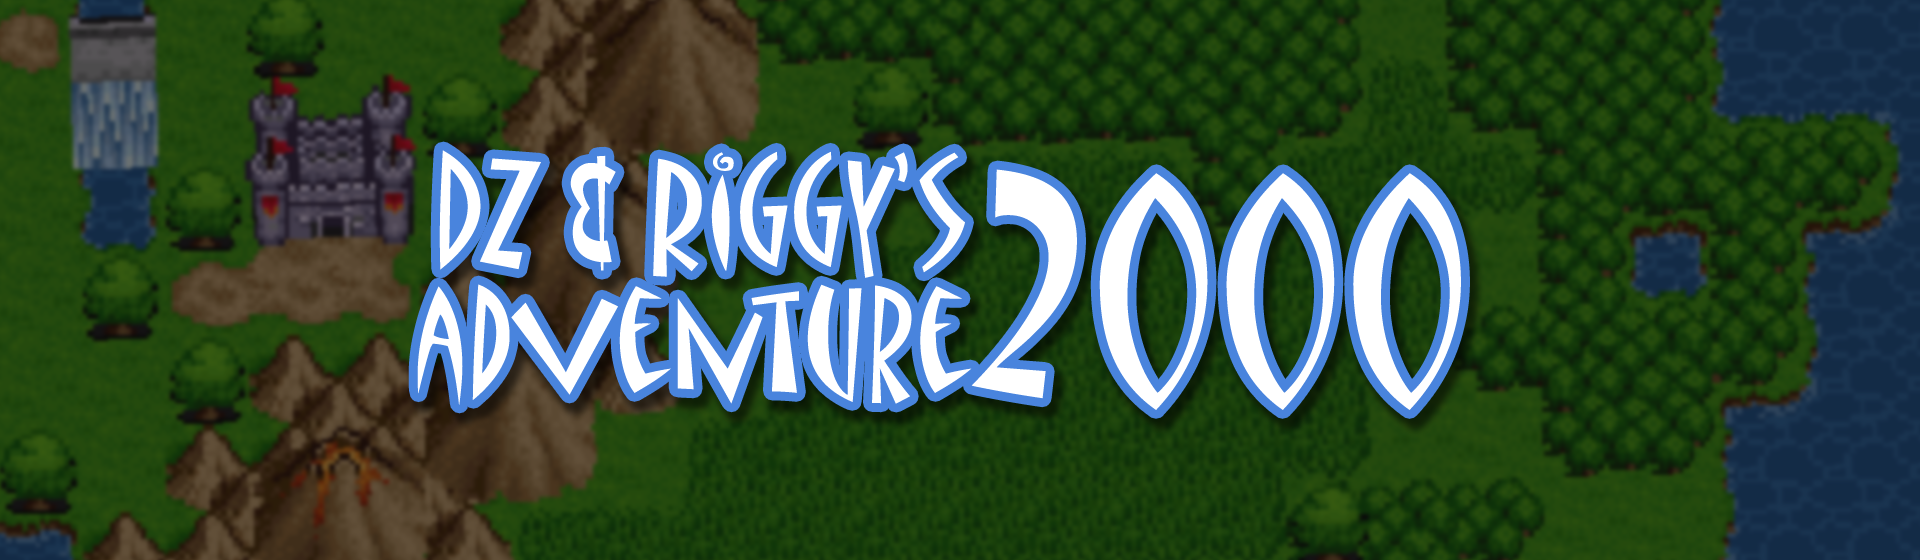 DZ & Riggy's Adventure 2000